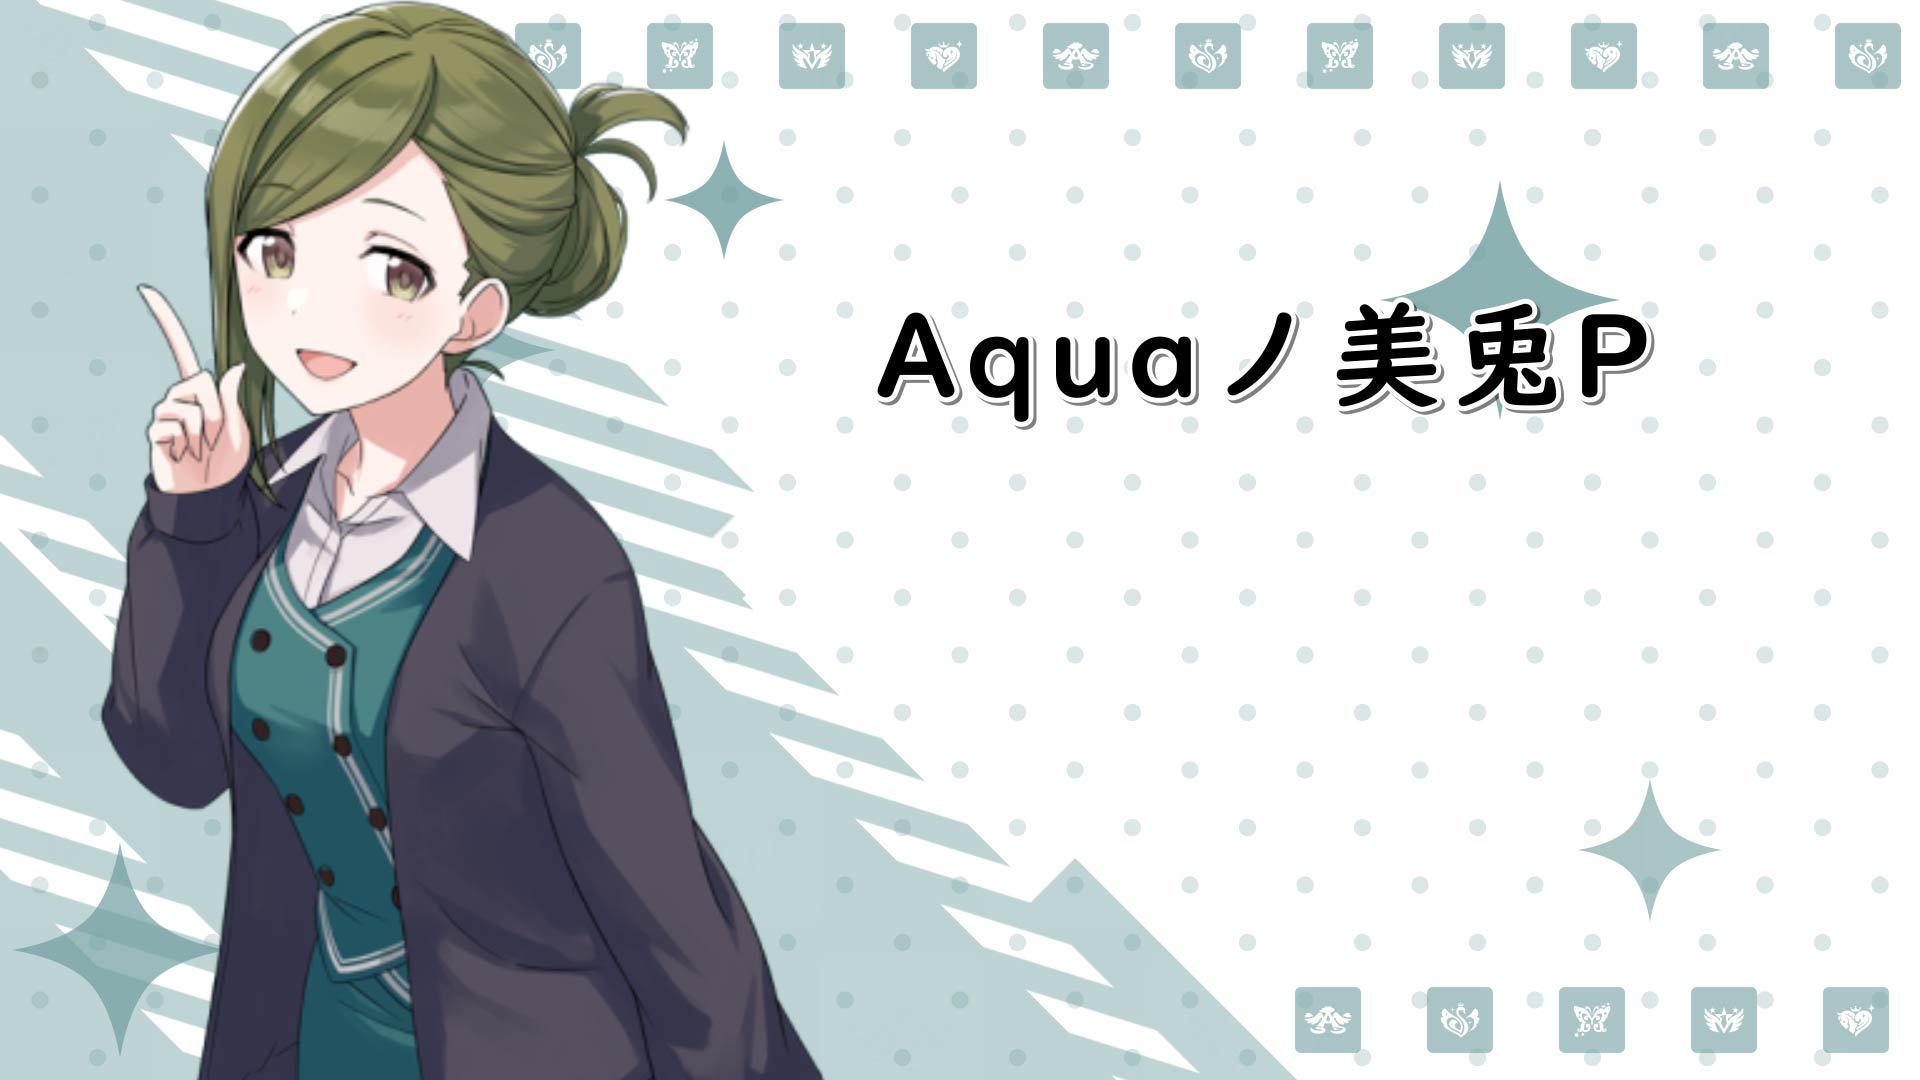 Aquaノ美兎P